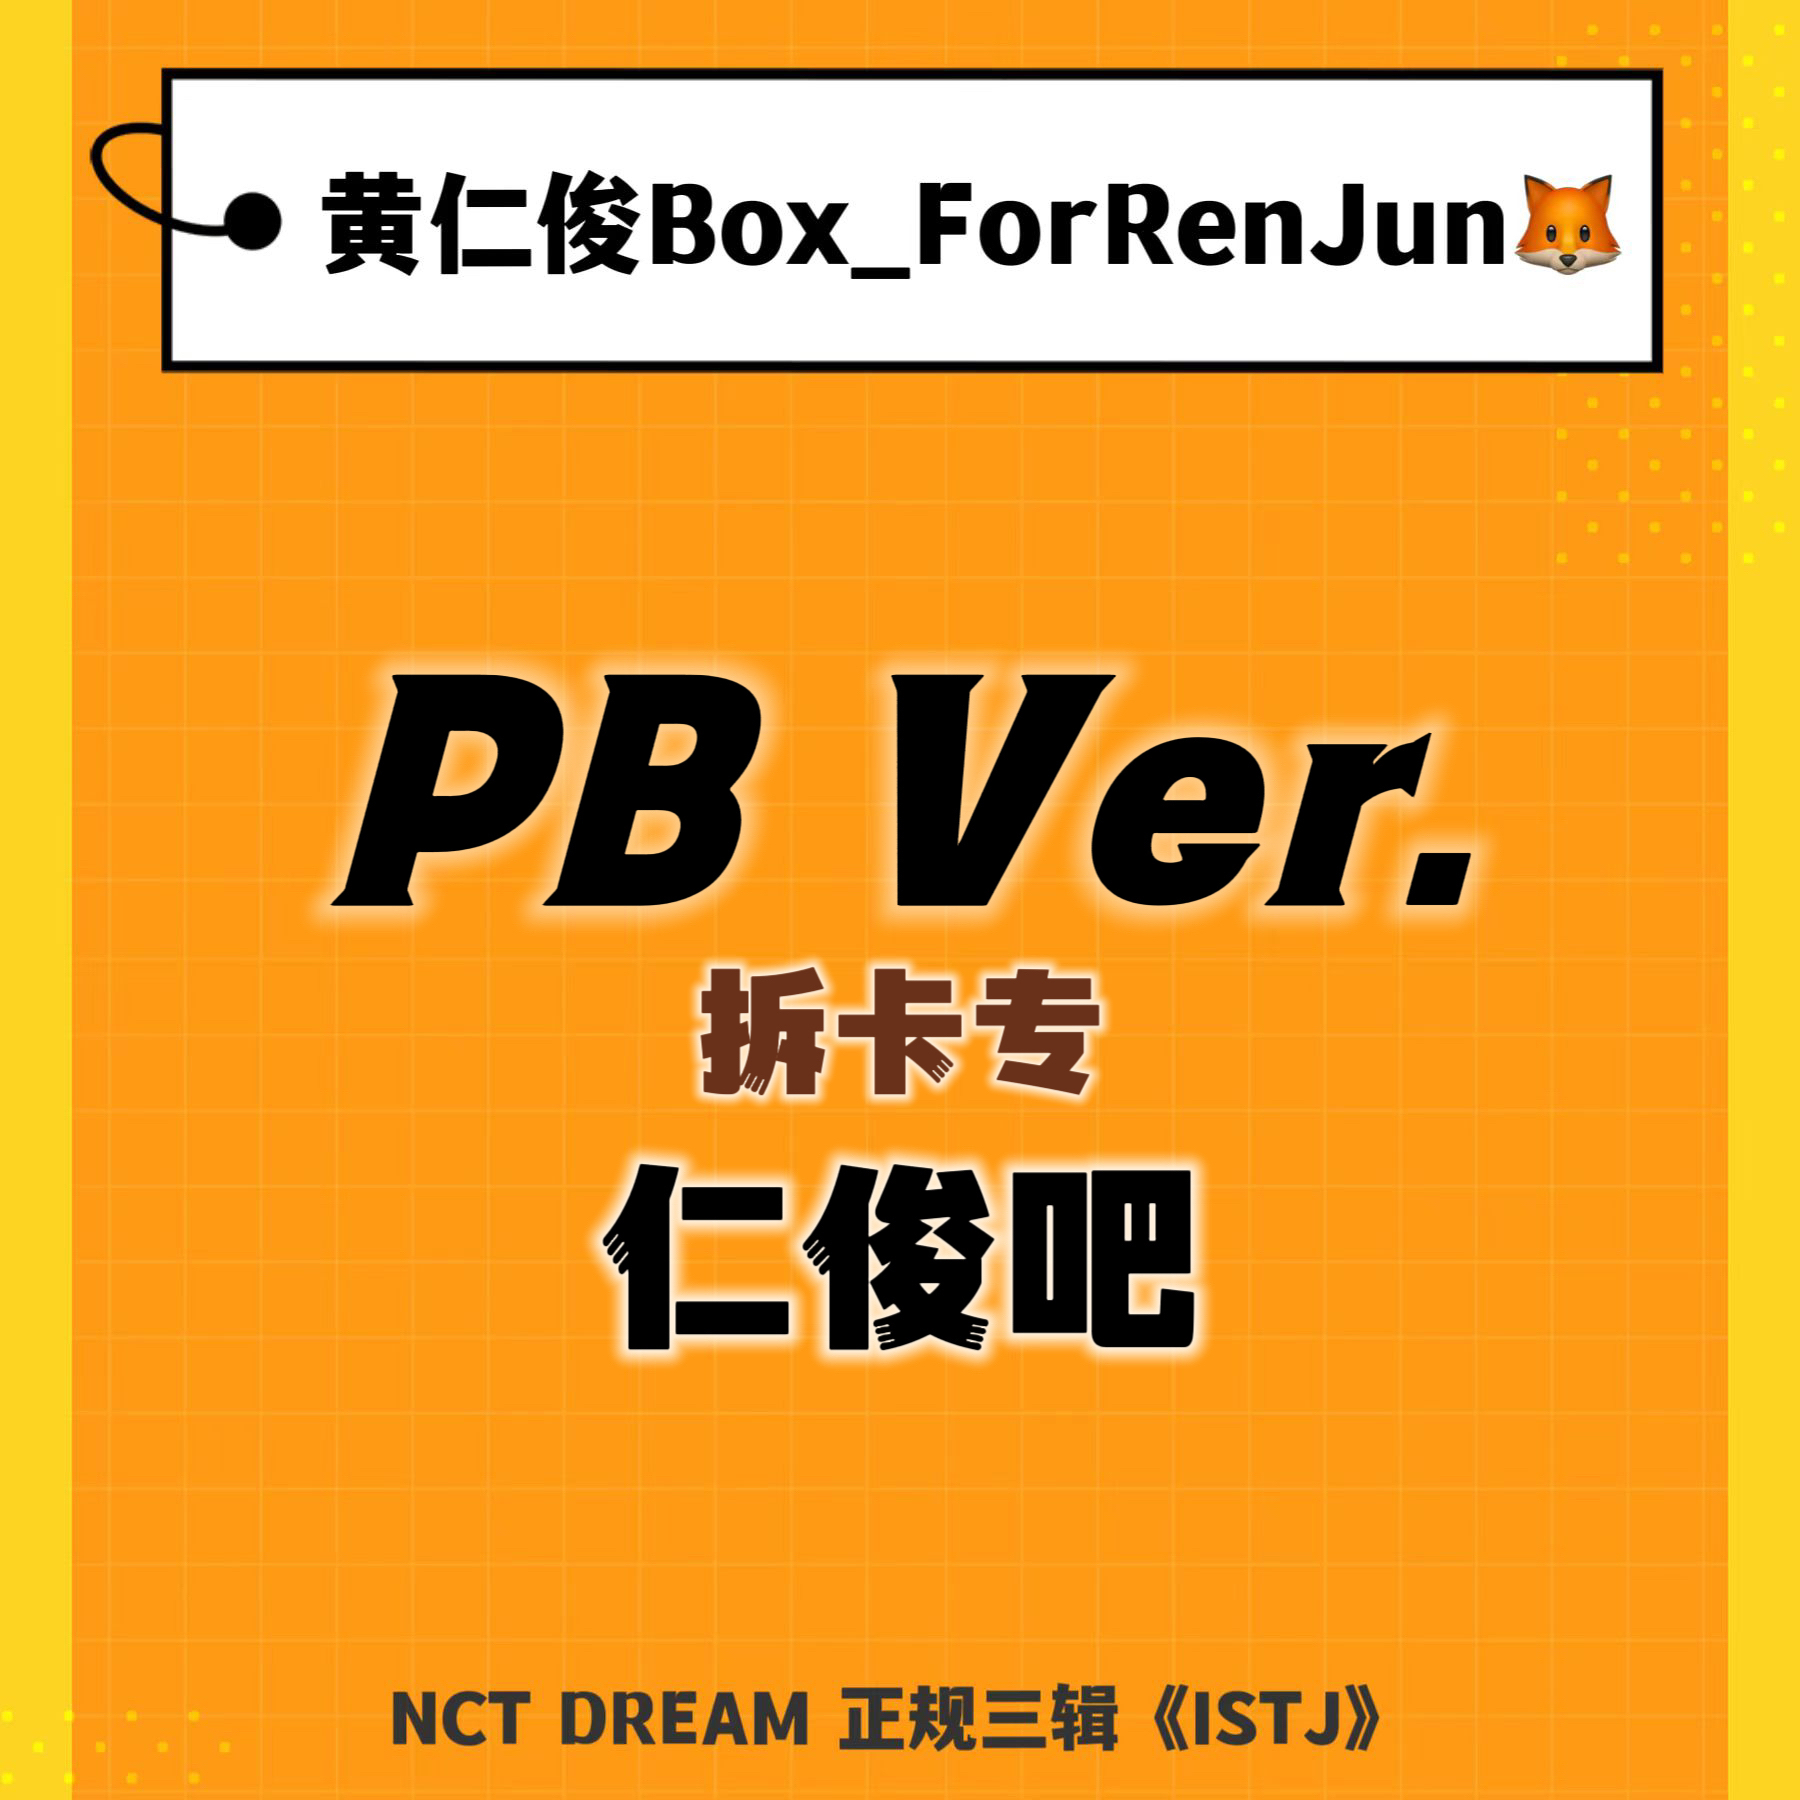 [拆卡专] [Ktown4u Special Gift] NCT DREAM - 正规3辑 [ISTJ] (Photobook Ver.) (随机版本)_黄仁俊吧RenJunBar